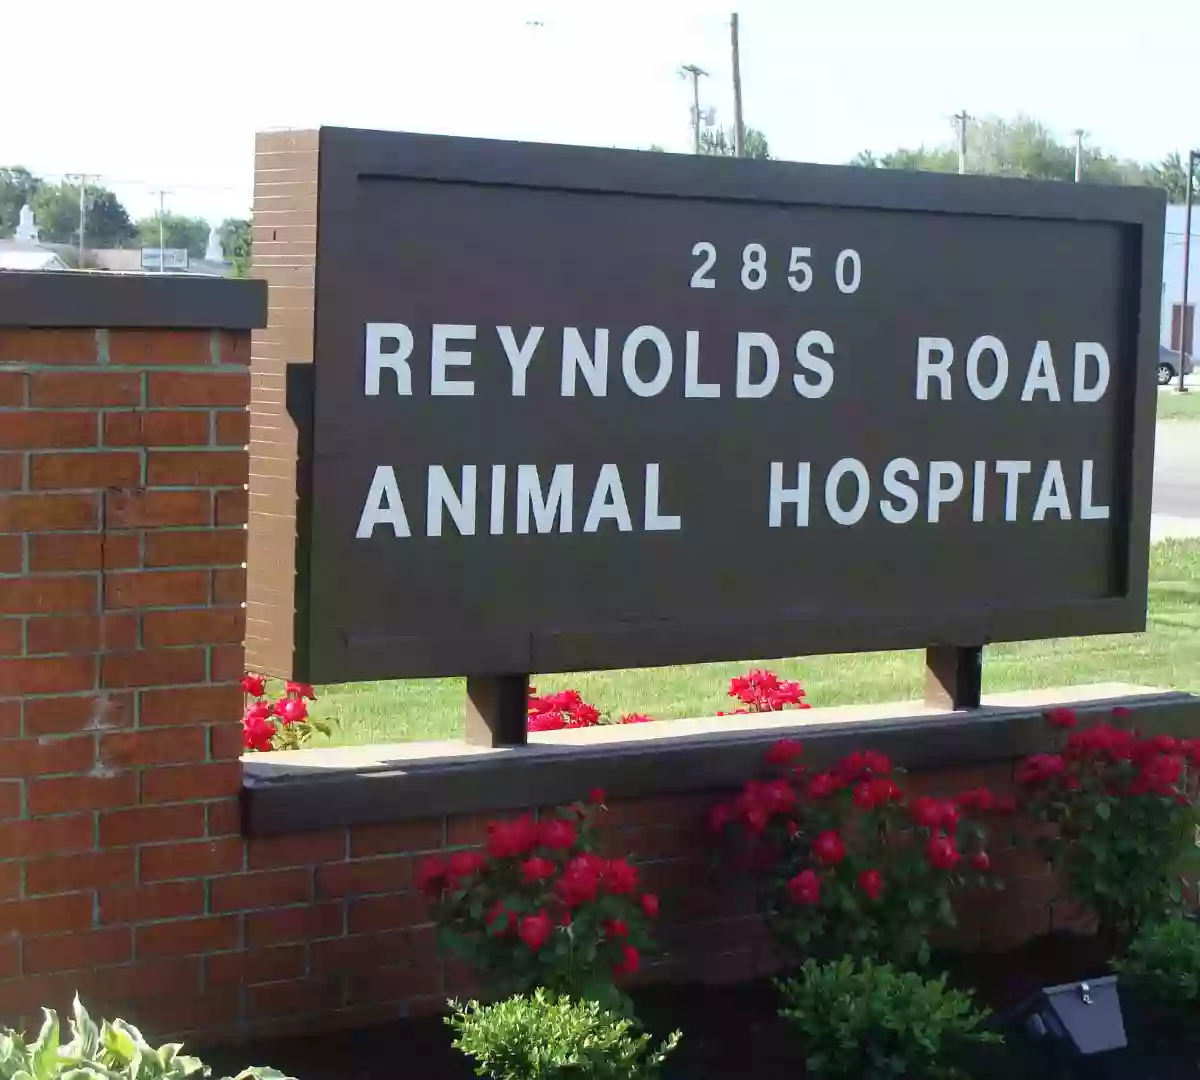 Reynolds Road Animal Hospital: Hanusz Dawn M DVM